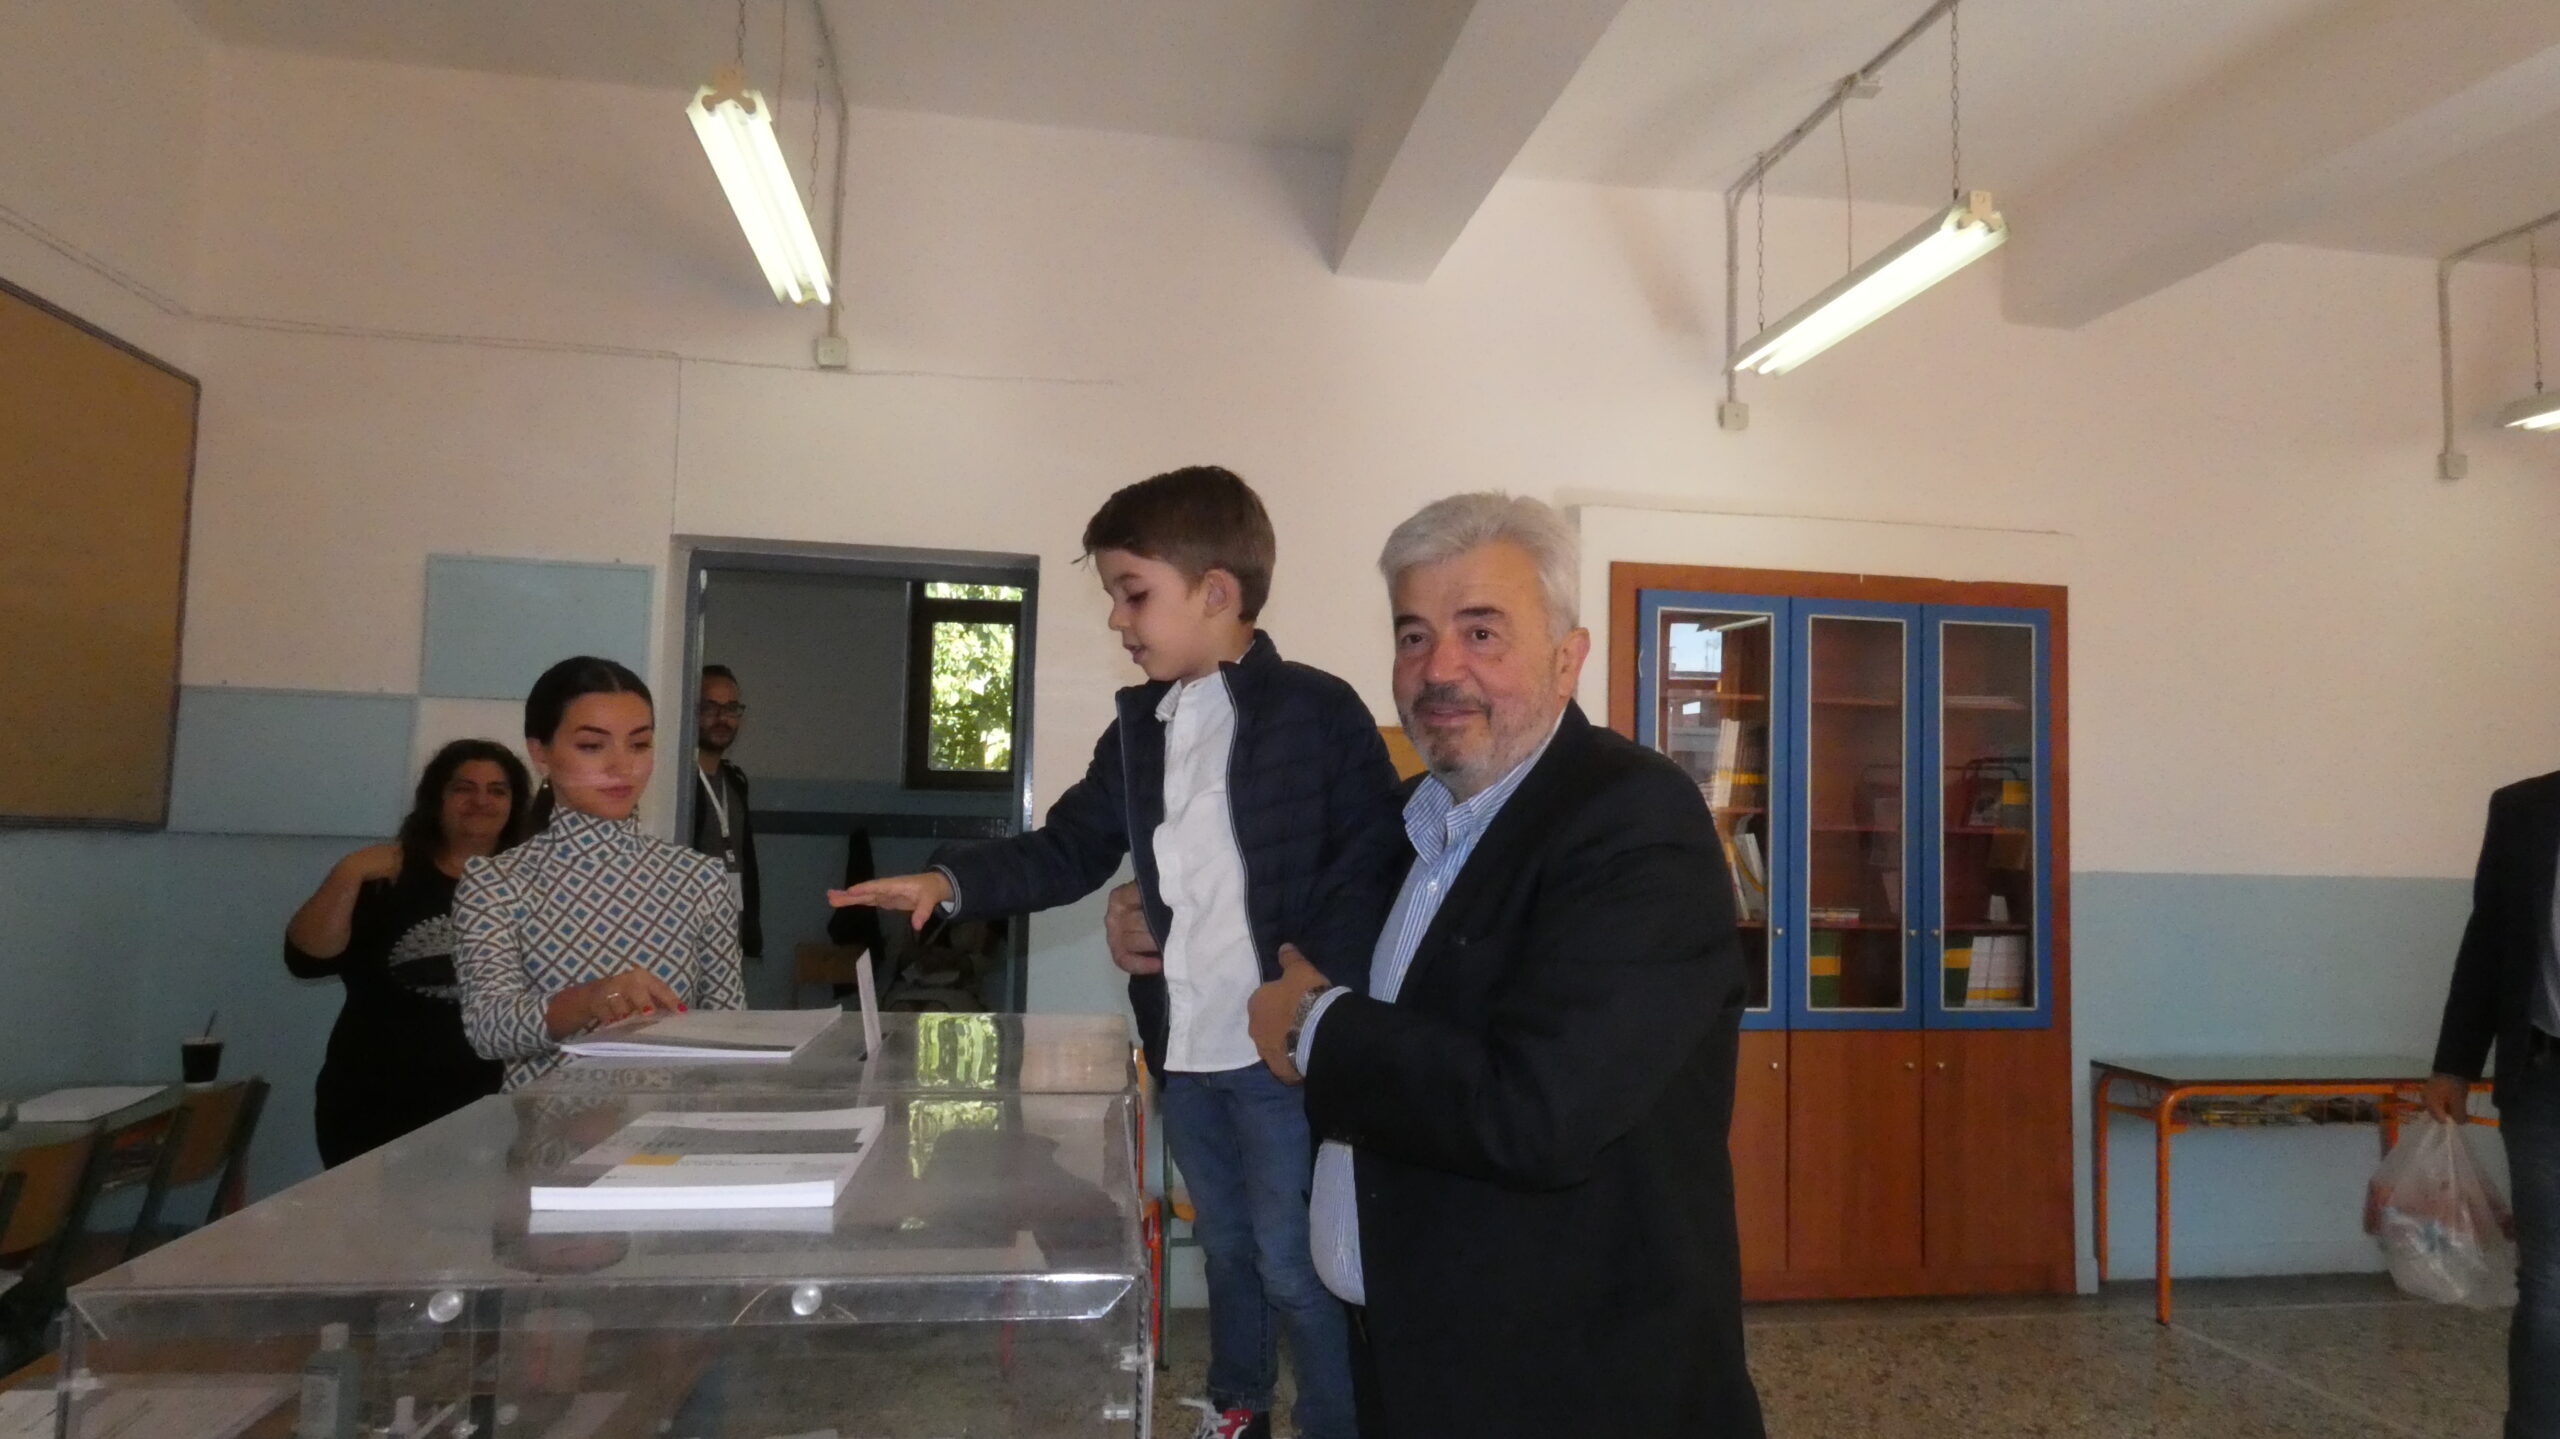 Μαζί με τον εγγονό του Παναγιώτη, άσκησε το εκλογικό του δικαίωμα ο Υποψήφιος Δήμαρχος Έδεσσας Γιάννης Μουράτογλου σε μια όμορφη στιγμή